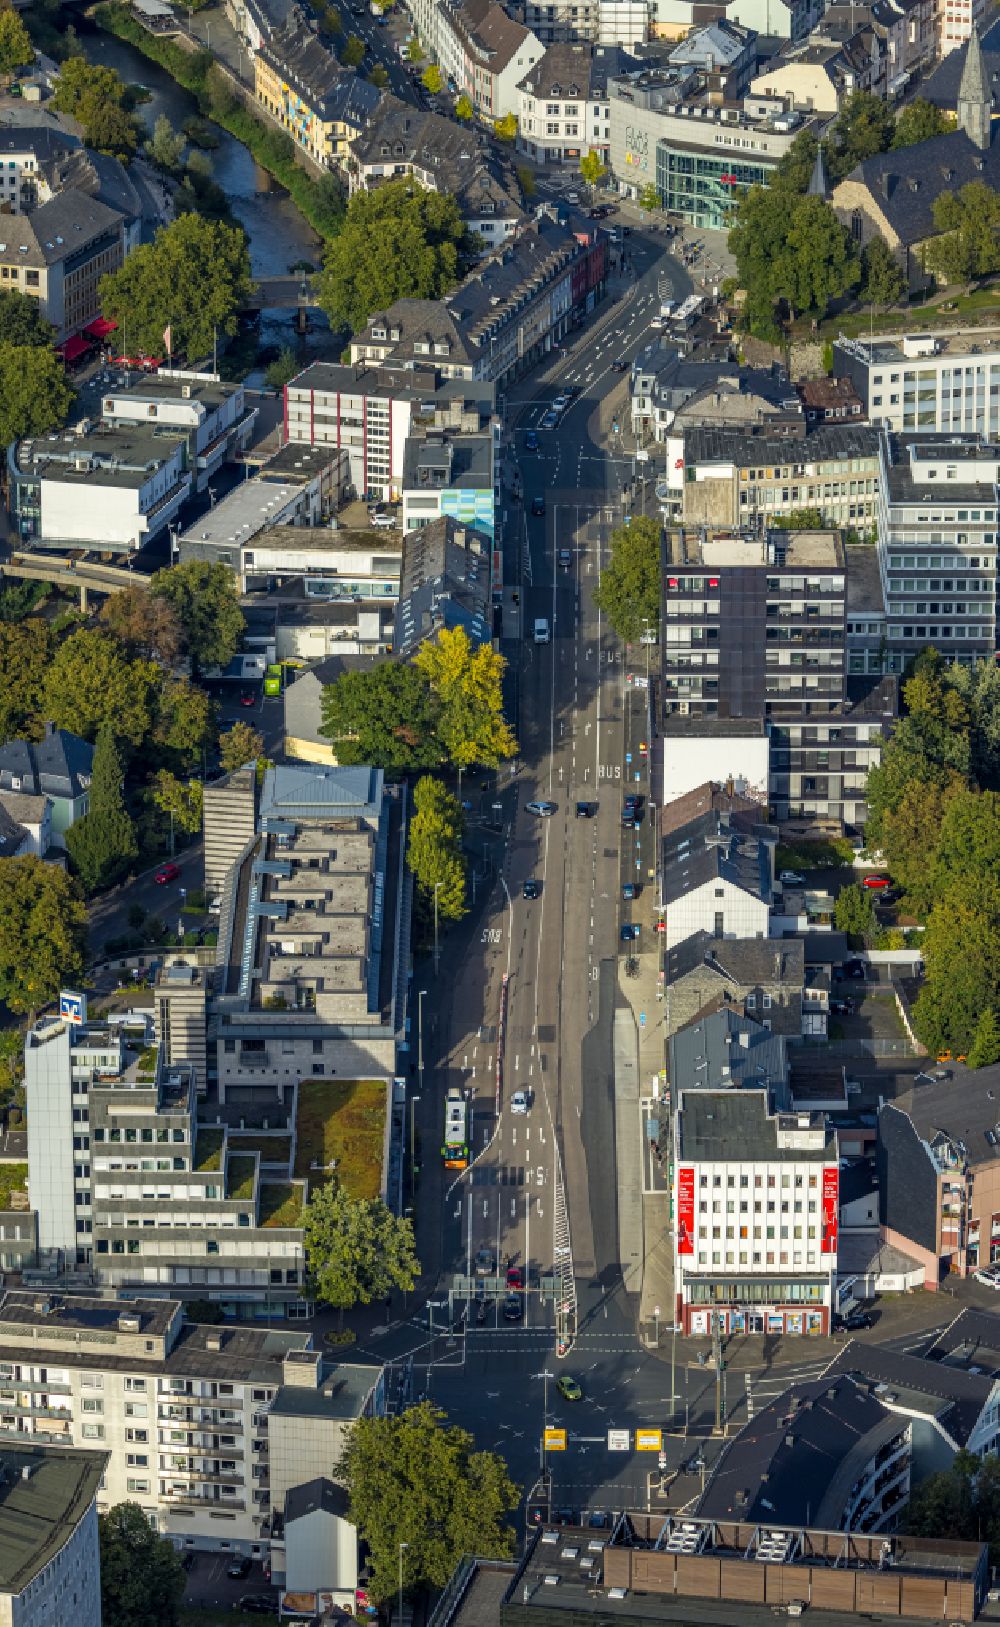 Luftbild Siegen - Verlauf der Straßenkreuzung der Koblenzer Straße und Berliner Straße in Siegen im Bundesland Nordrhein-Westfalen